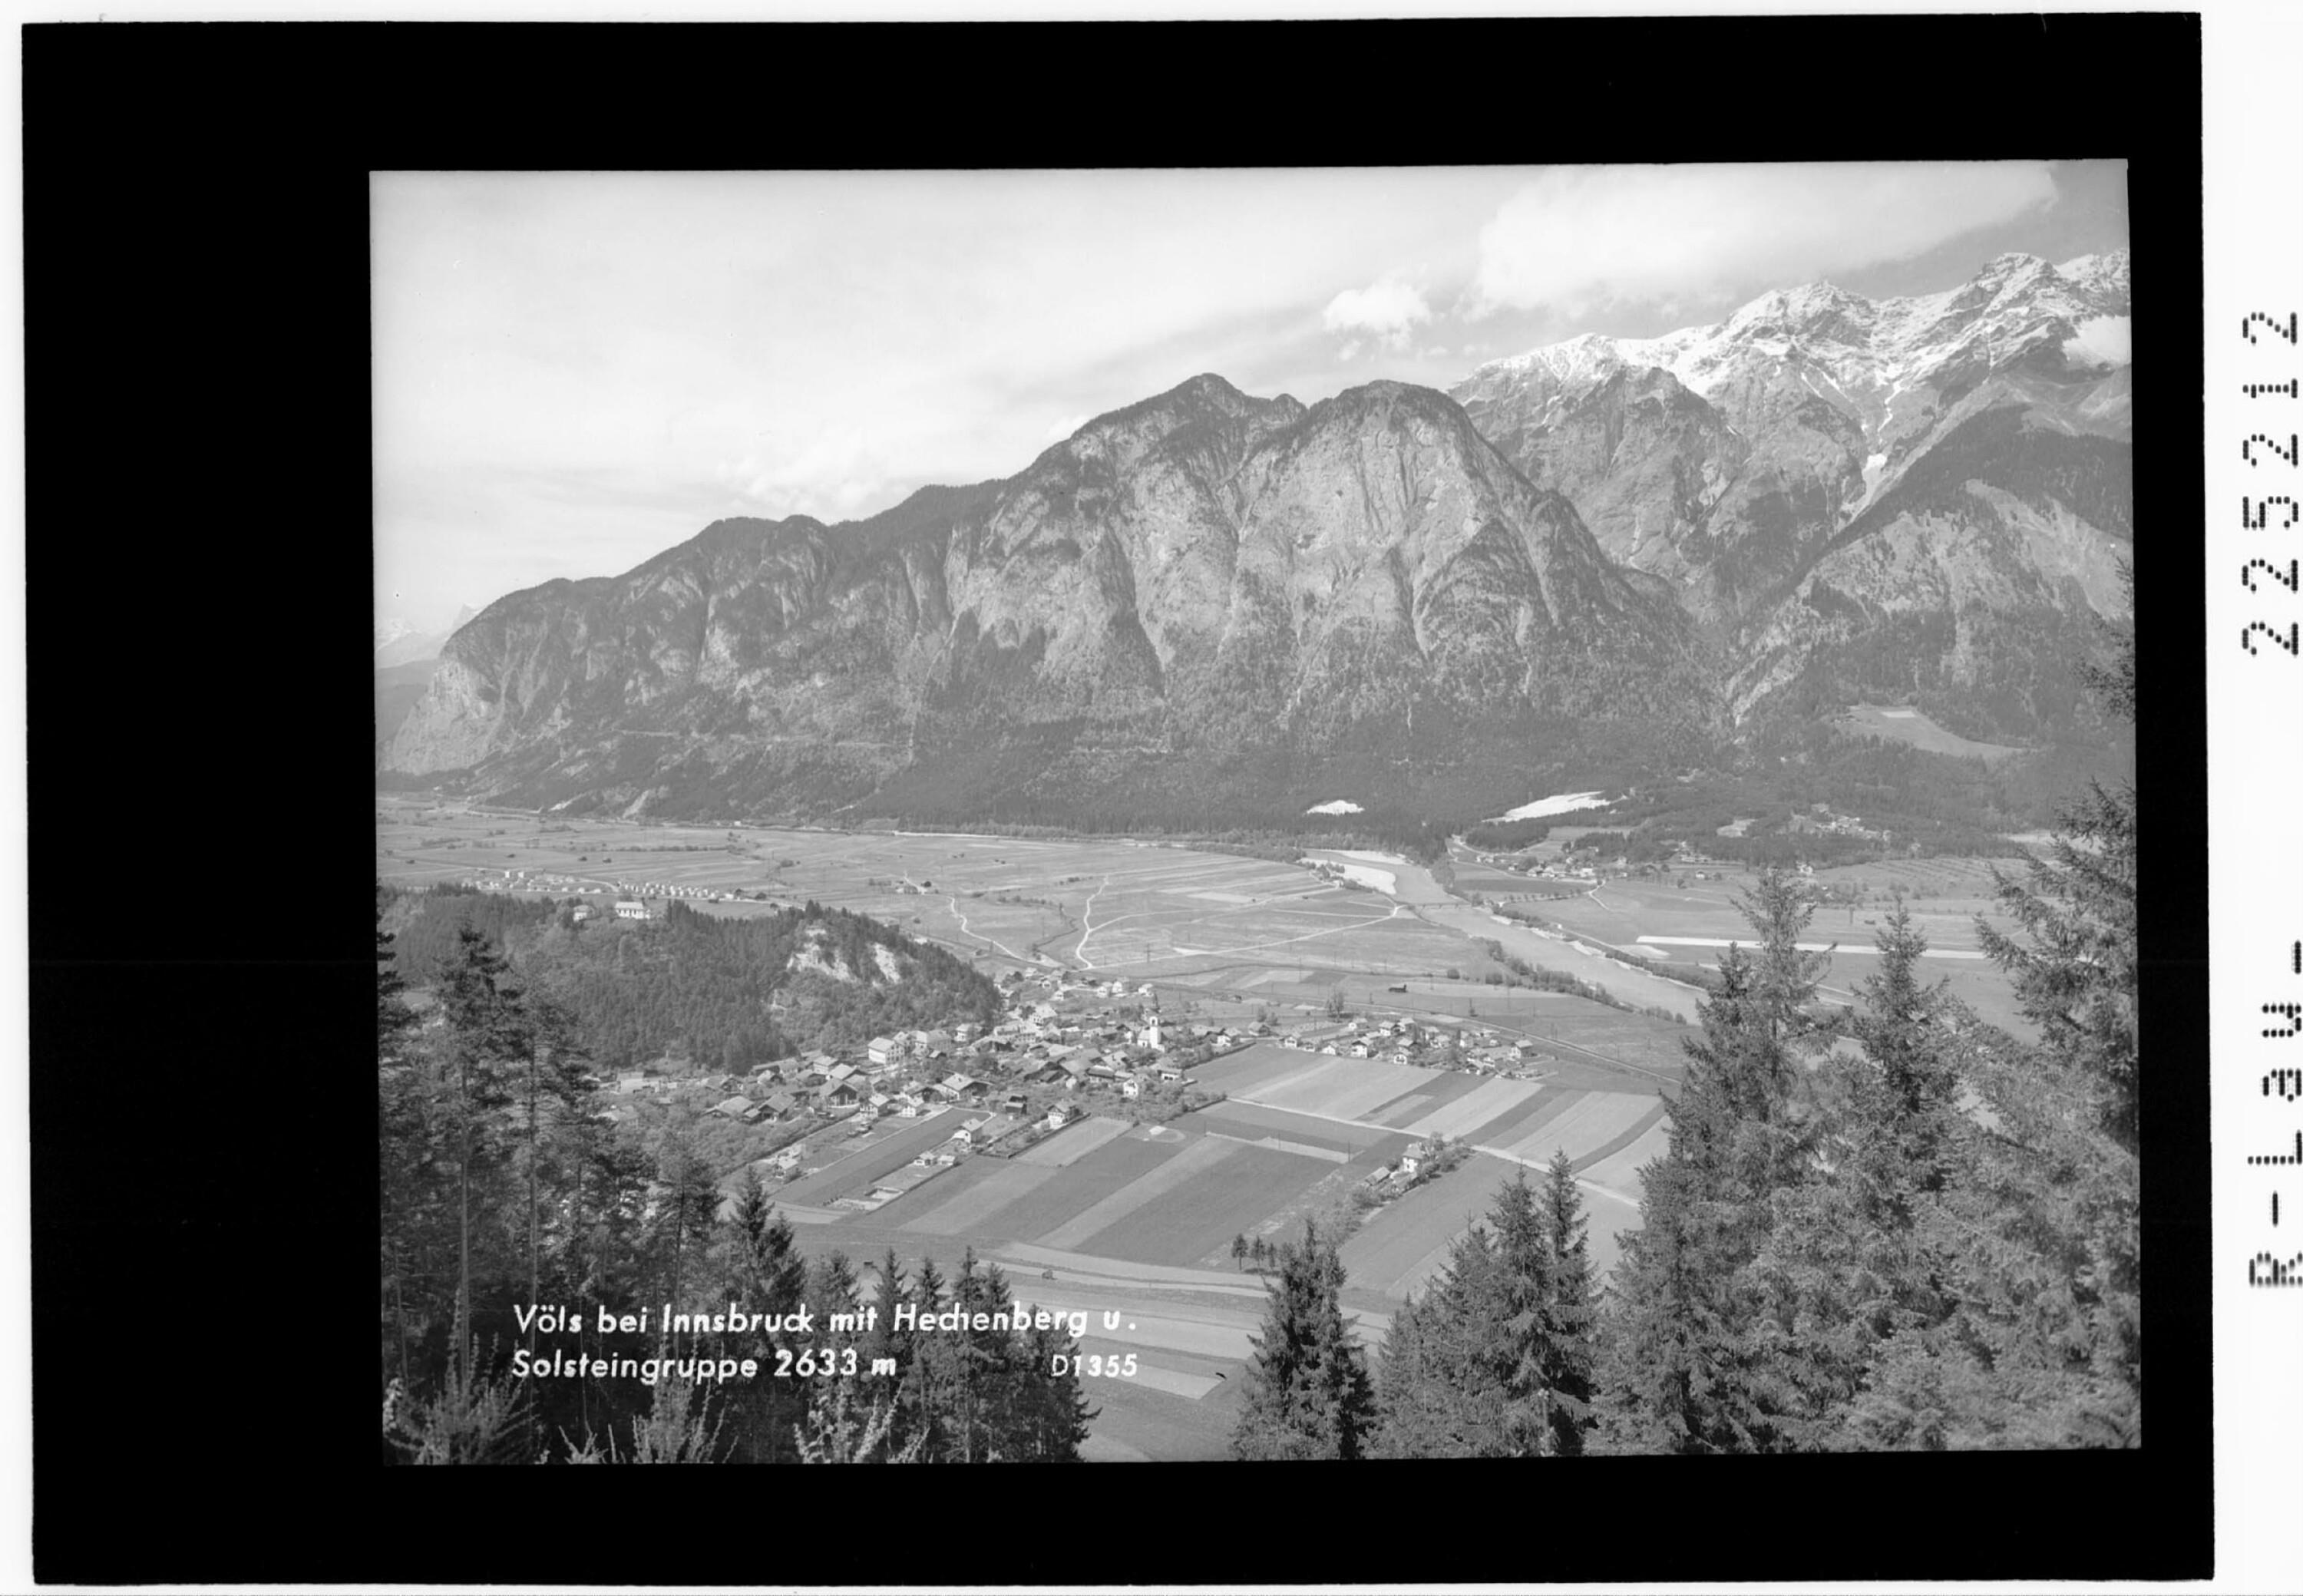 Völs bei Innsbruck mit Hechenberg und Solsteingruppe 2633 m></div>


    <hr>
    <div class=